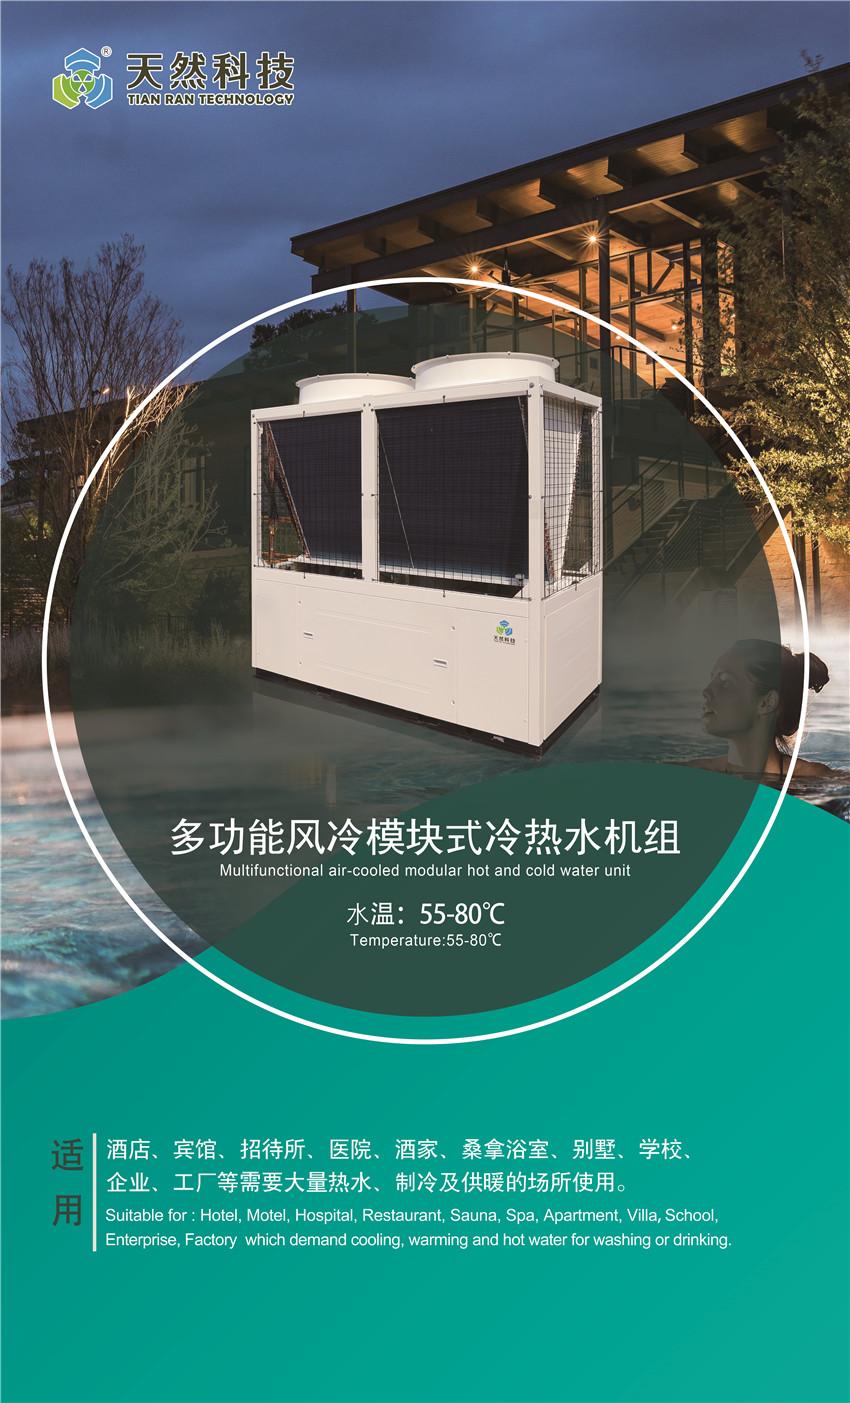 天然热水冷暖浴三合一空调器—中央空调废热处理节能改造